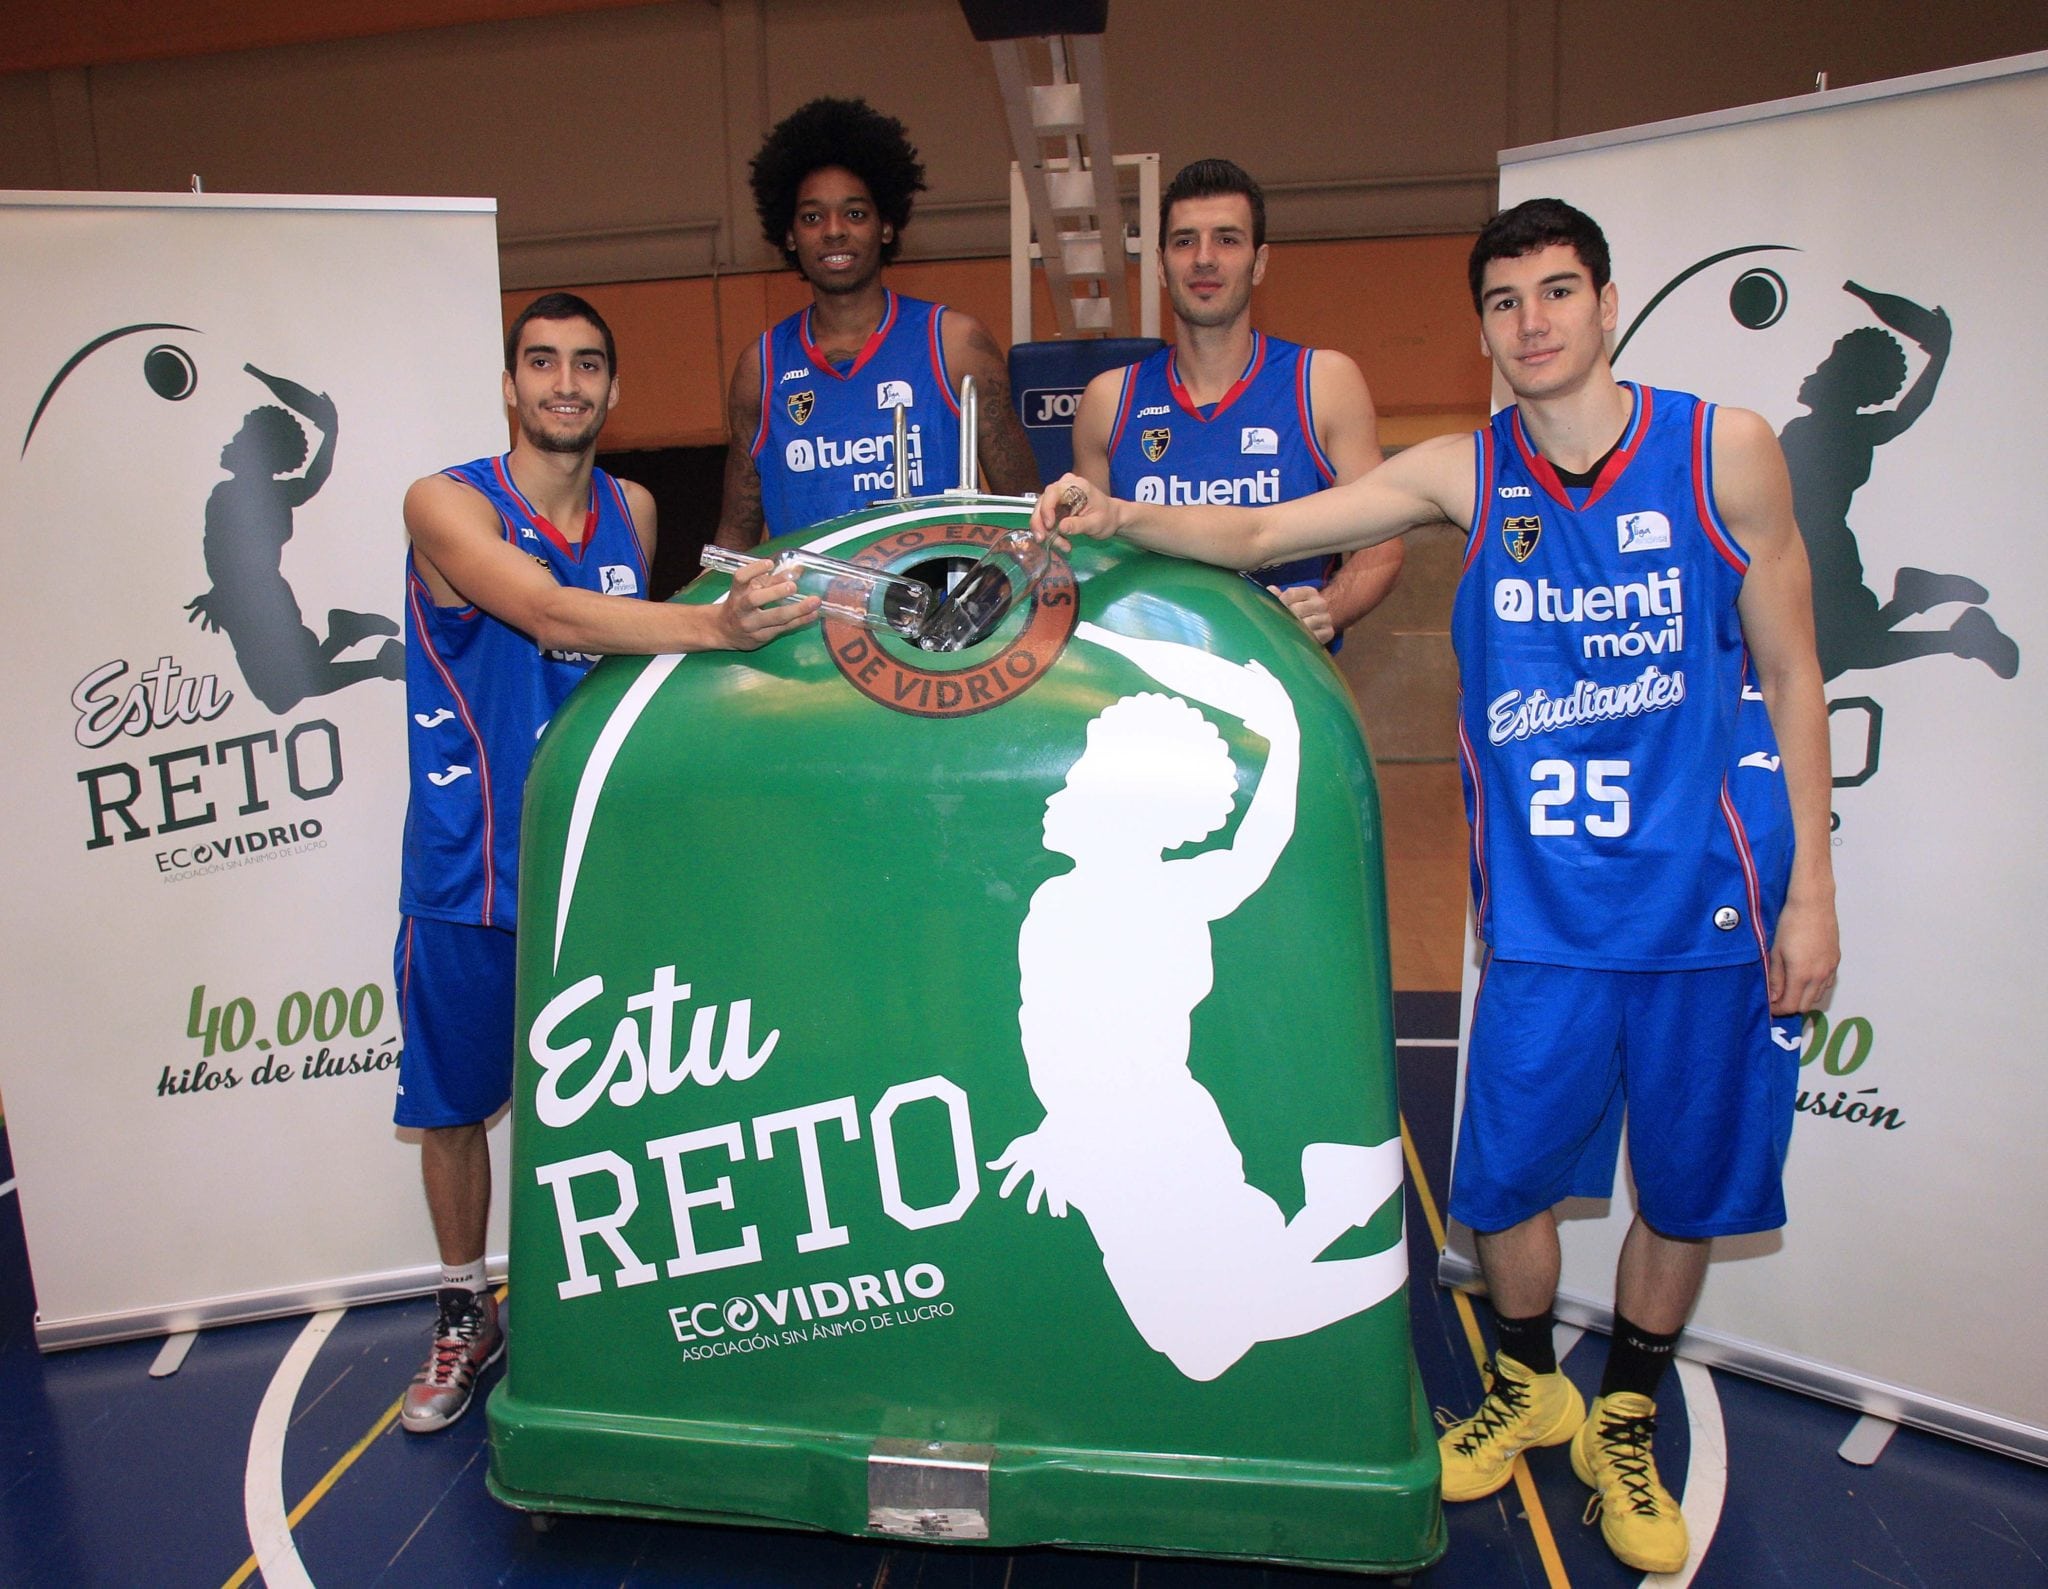 Recicla tu vidrio en el partido y colabora con el EstuReto: si llegamos a 40.000 kgs, Ecovidrio patrocina la cantera